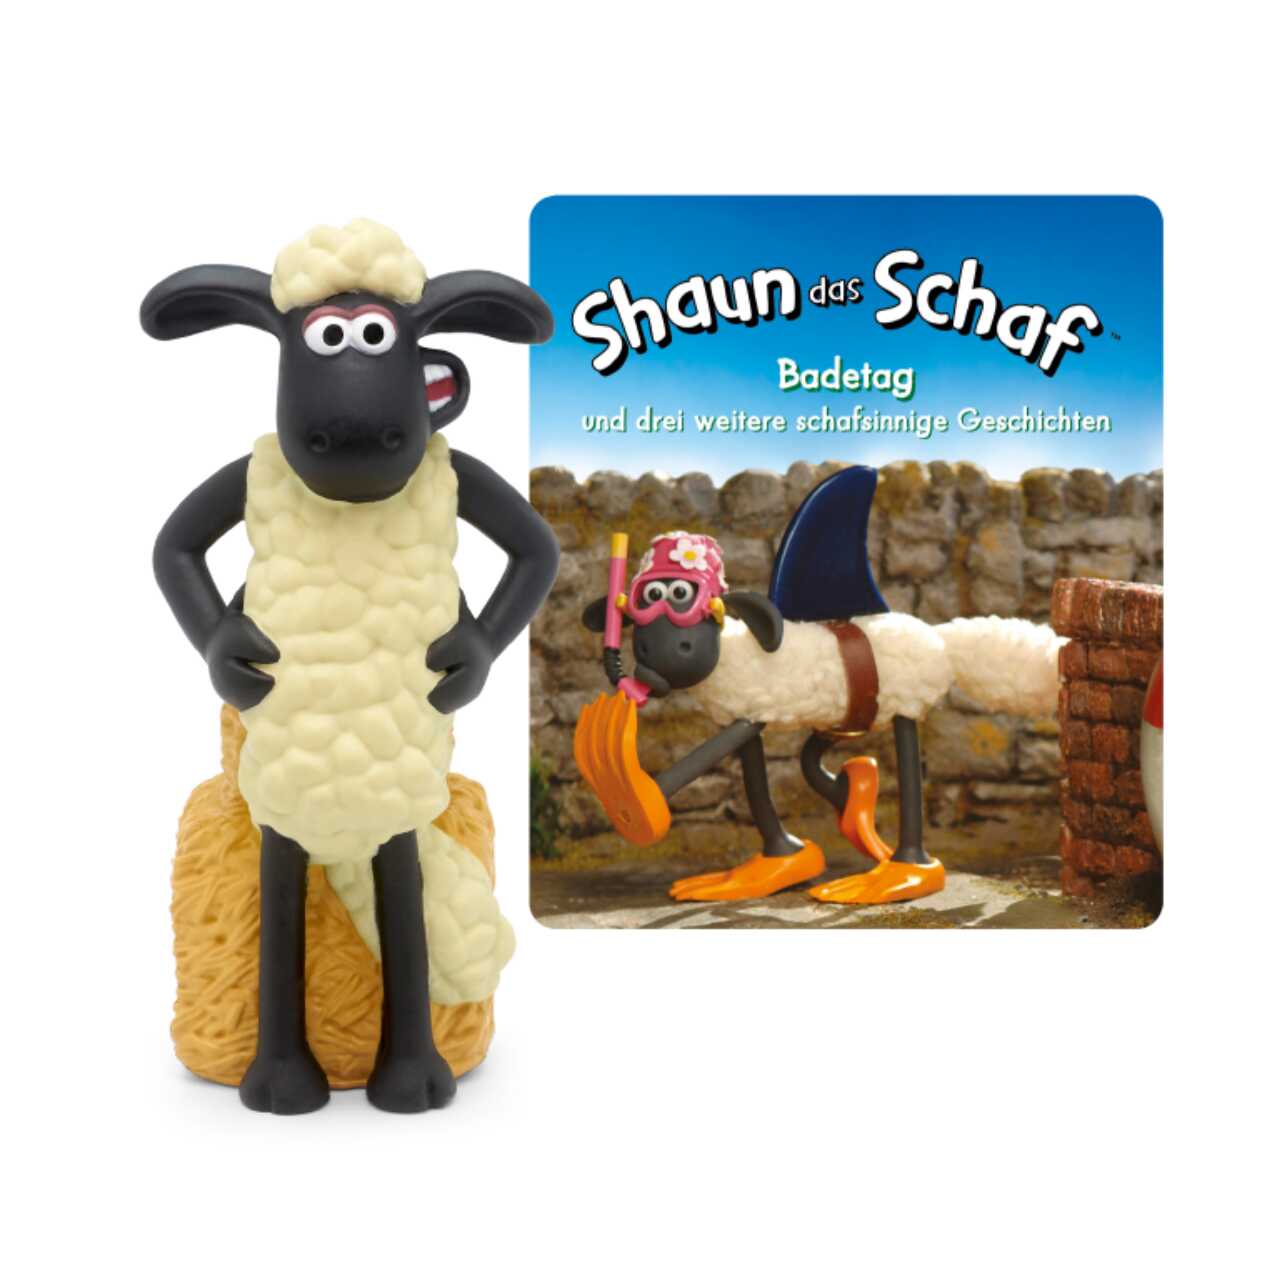 Produktbild TONIES 10000367 - Hörbuch - Shaun das Schaf, Badetag und drei weitere schafsinnige Geschichten